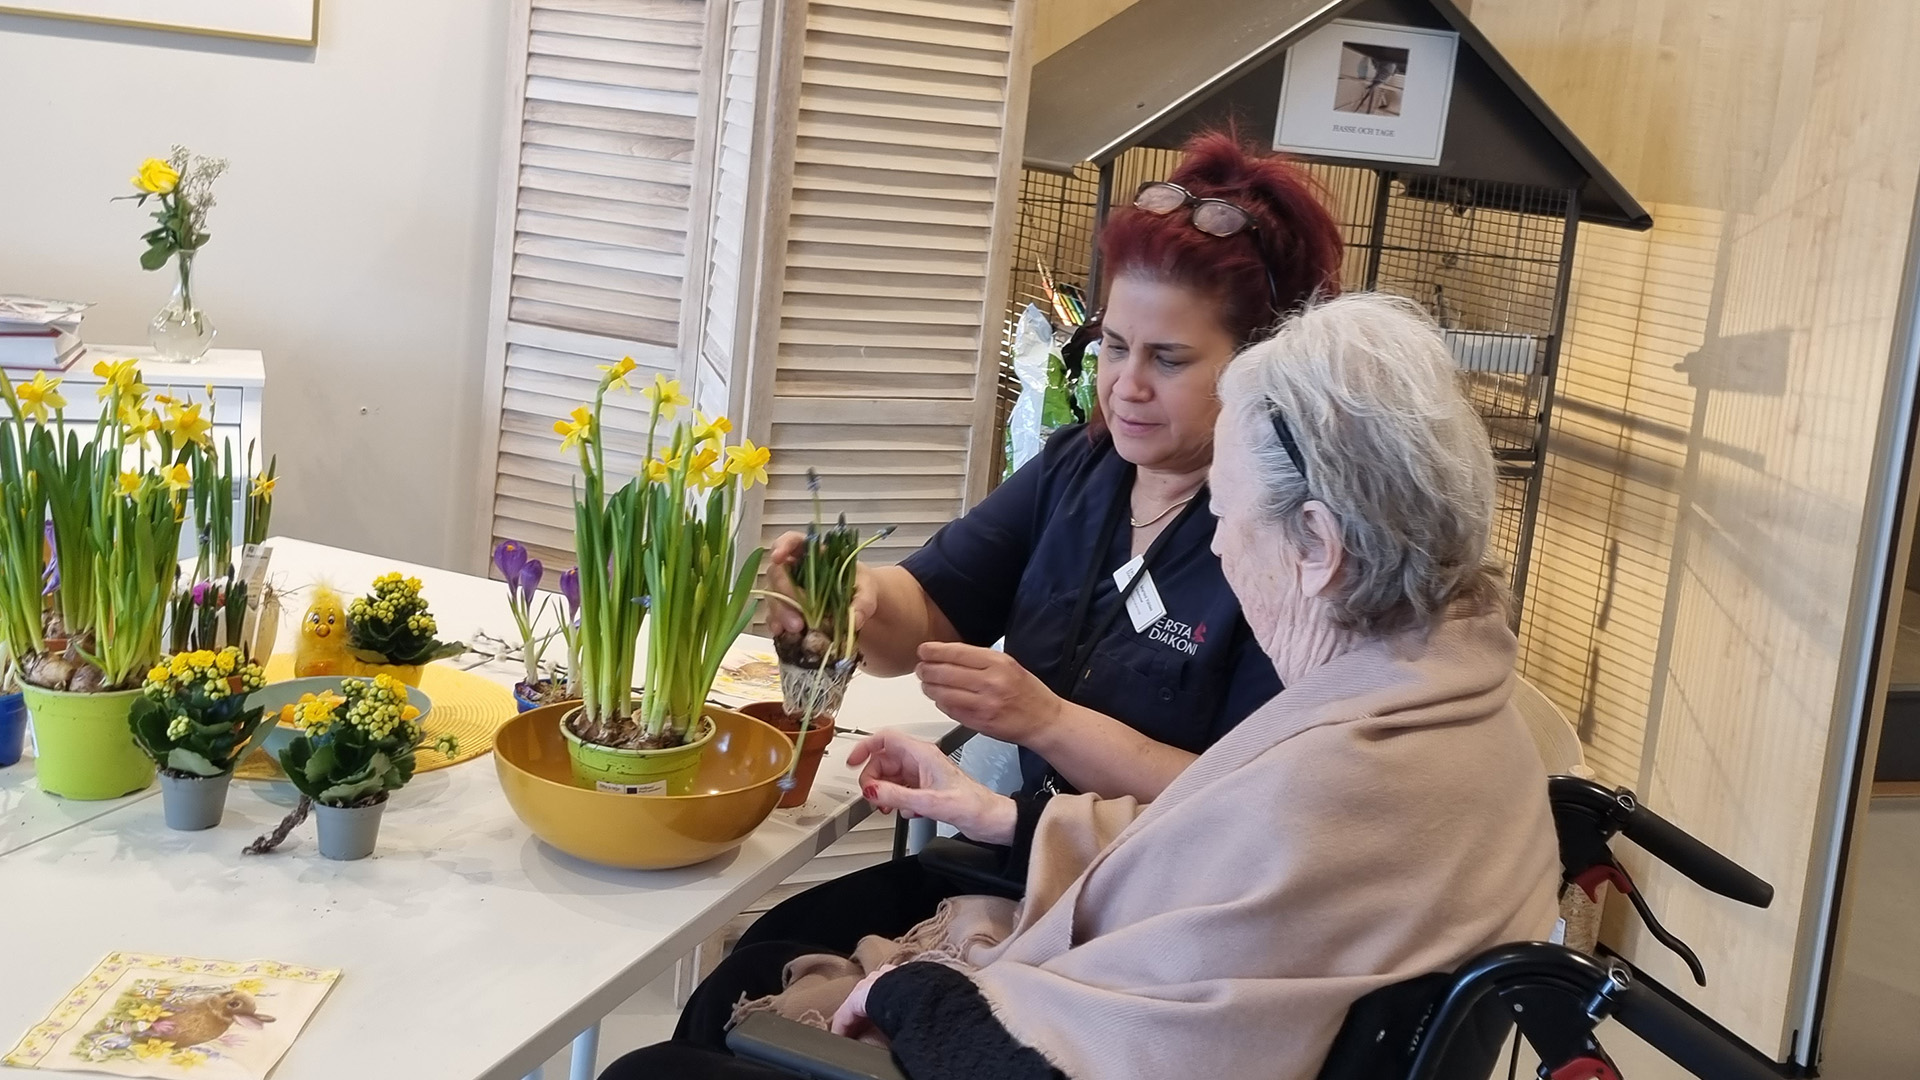 marisol sitter tillsammasn med en äldre kvinna och arrangerar gula blommor